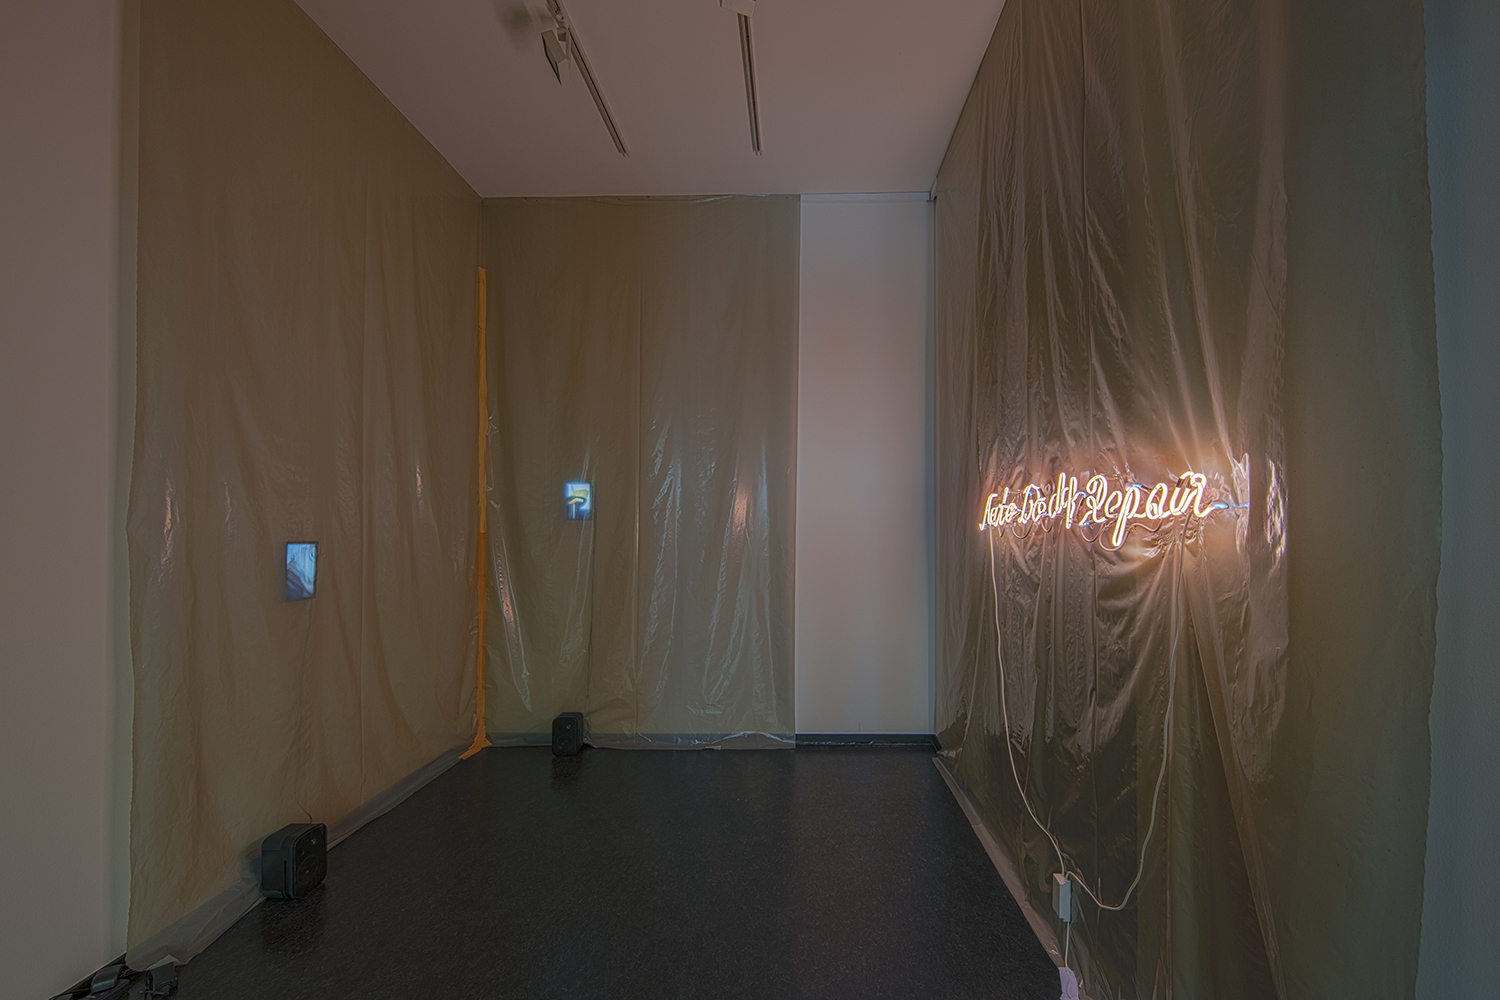 Alice Peragine, Auto Body Repair [in remote control], 2020, installation view, Studioraum 45cbm, Staatliche Kunsthalle Baden-Baden, photo: Helge Mundt.